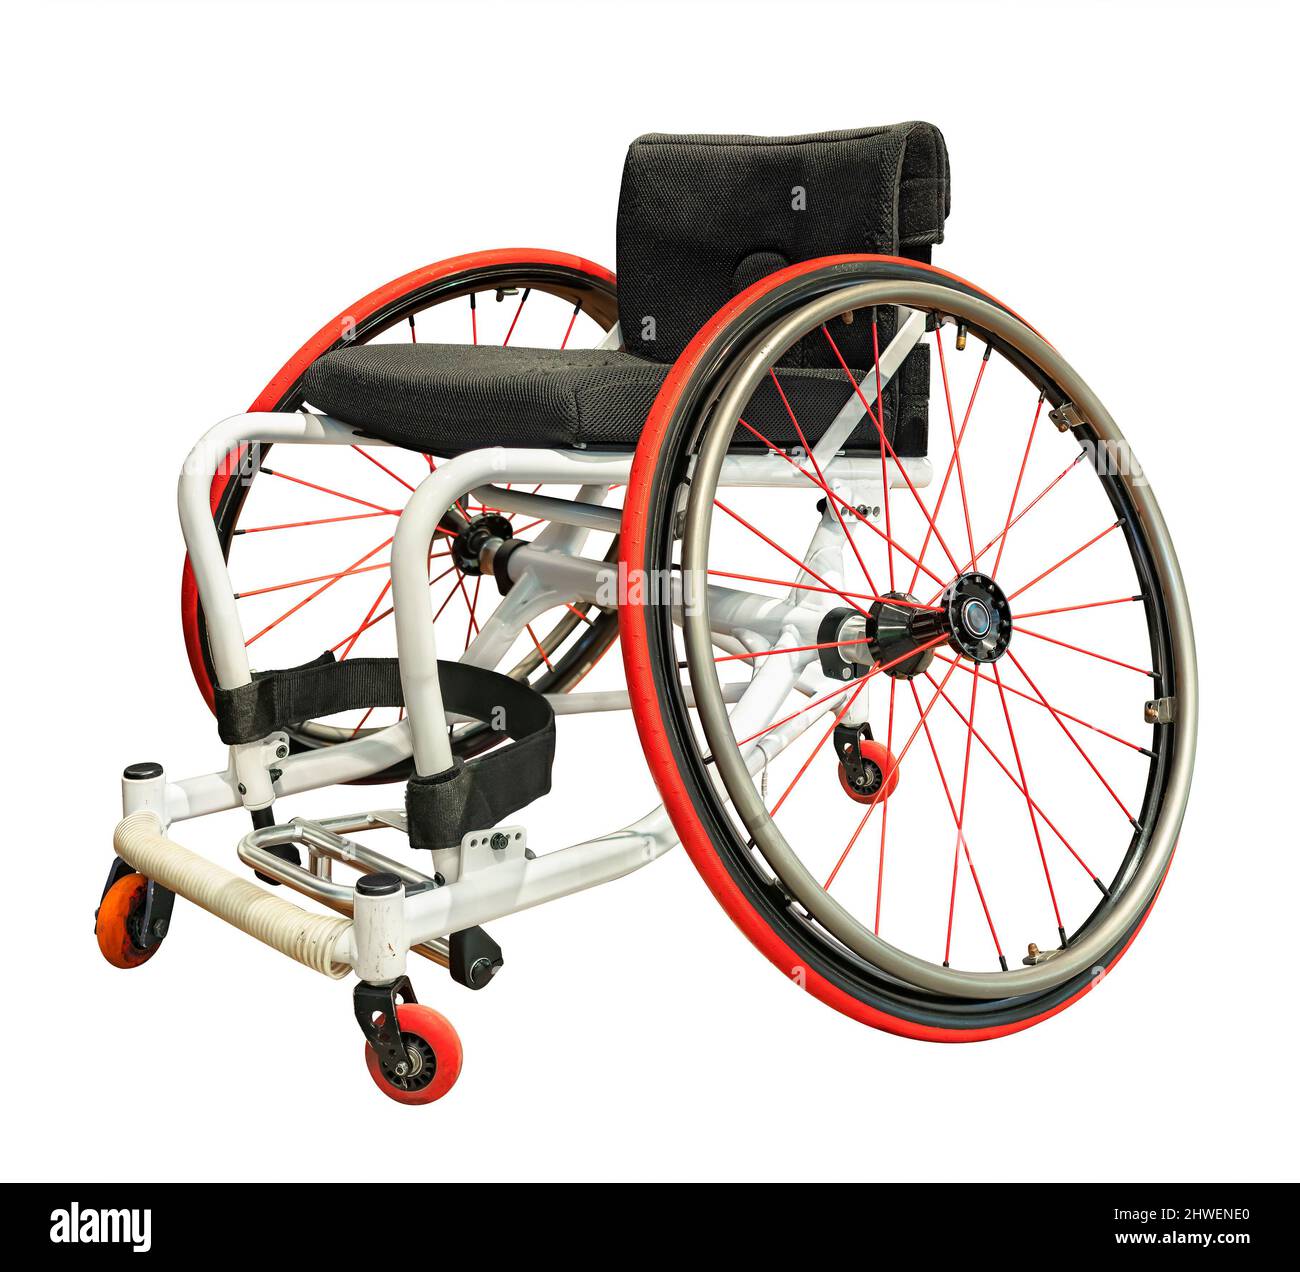 Clipping isolierte Fotografie eines professionellen Sportrollstuhls mit einem ausgeprägten negativen Sturz für die Räder, die von behinderten Athleten in Wheelc verwendet werden Stockfoto